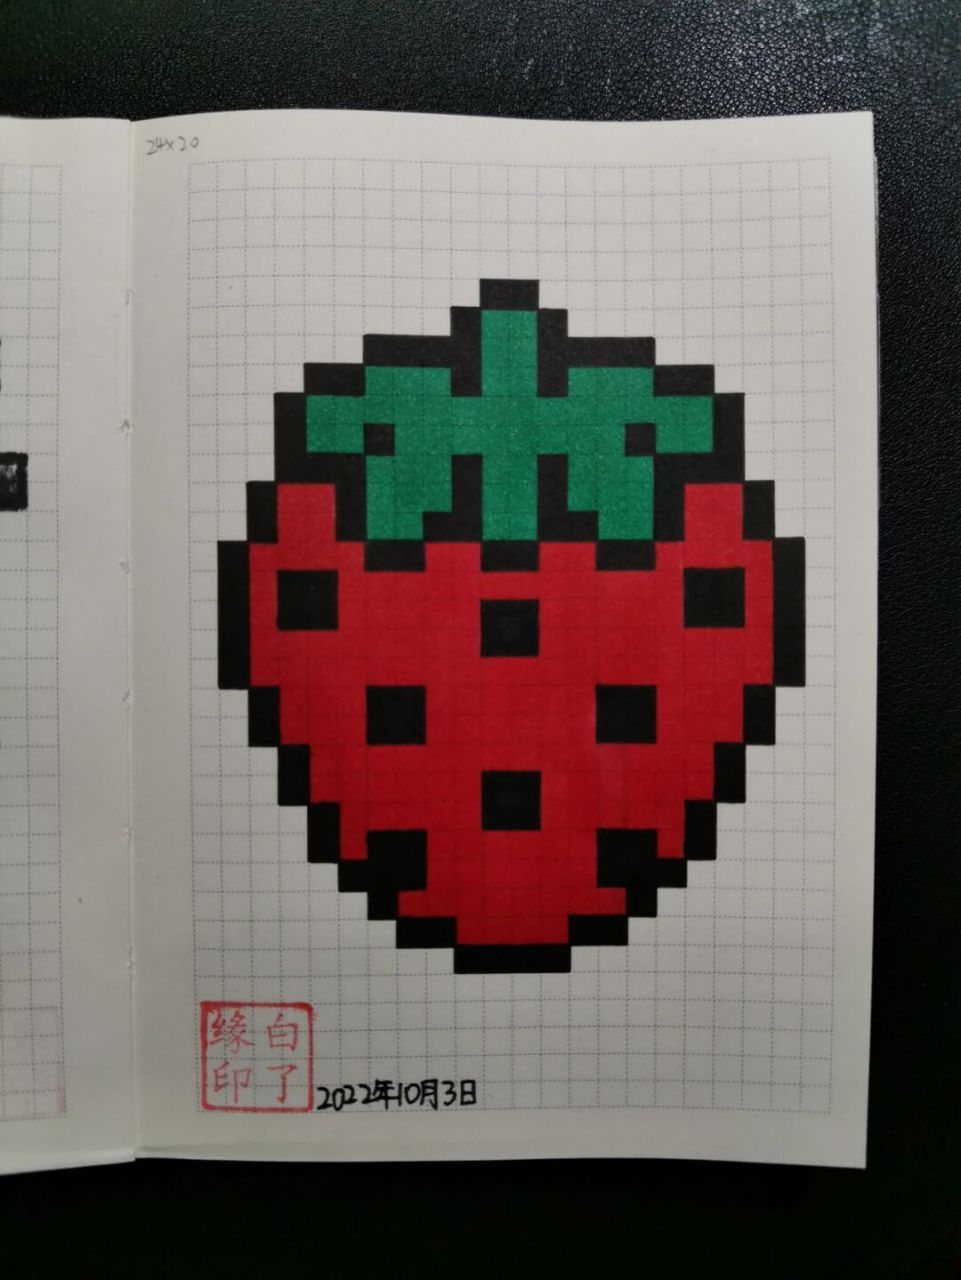 网格画草莓图片